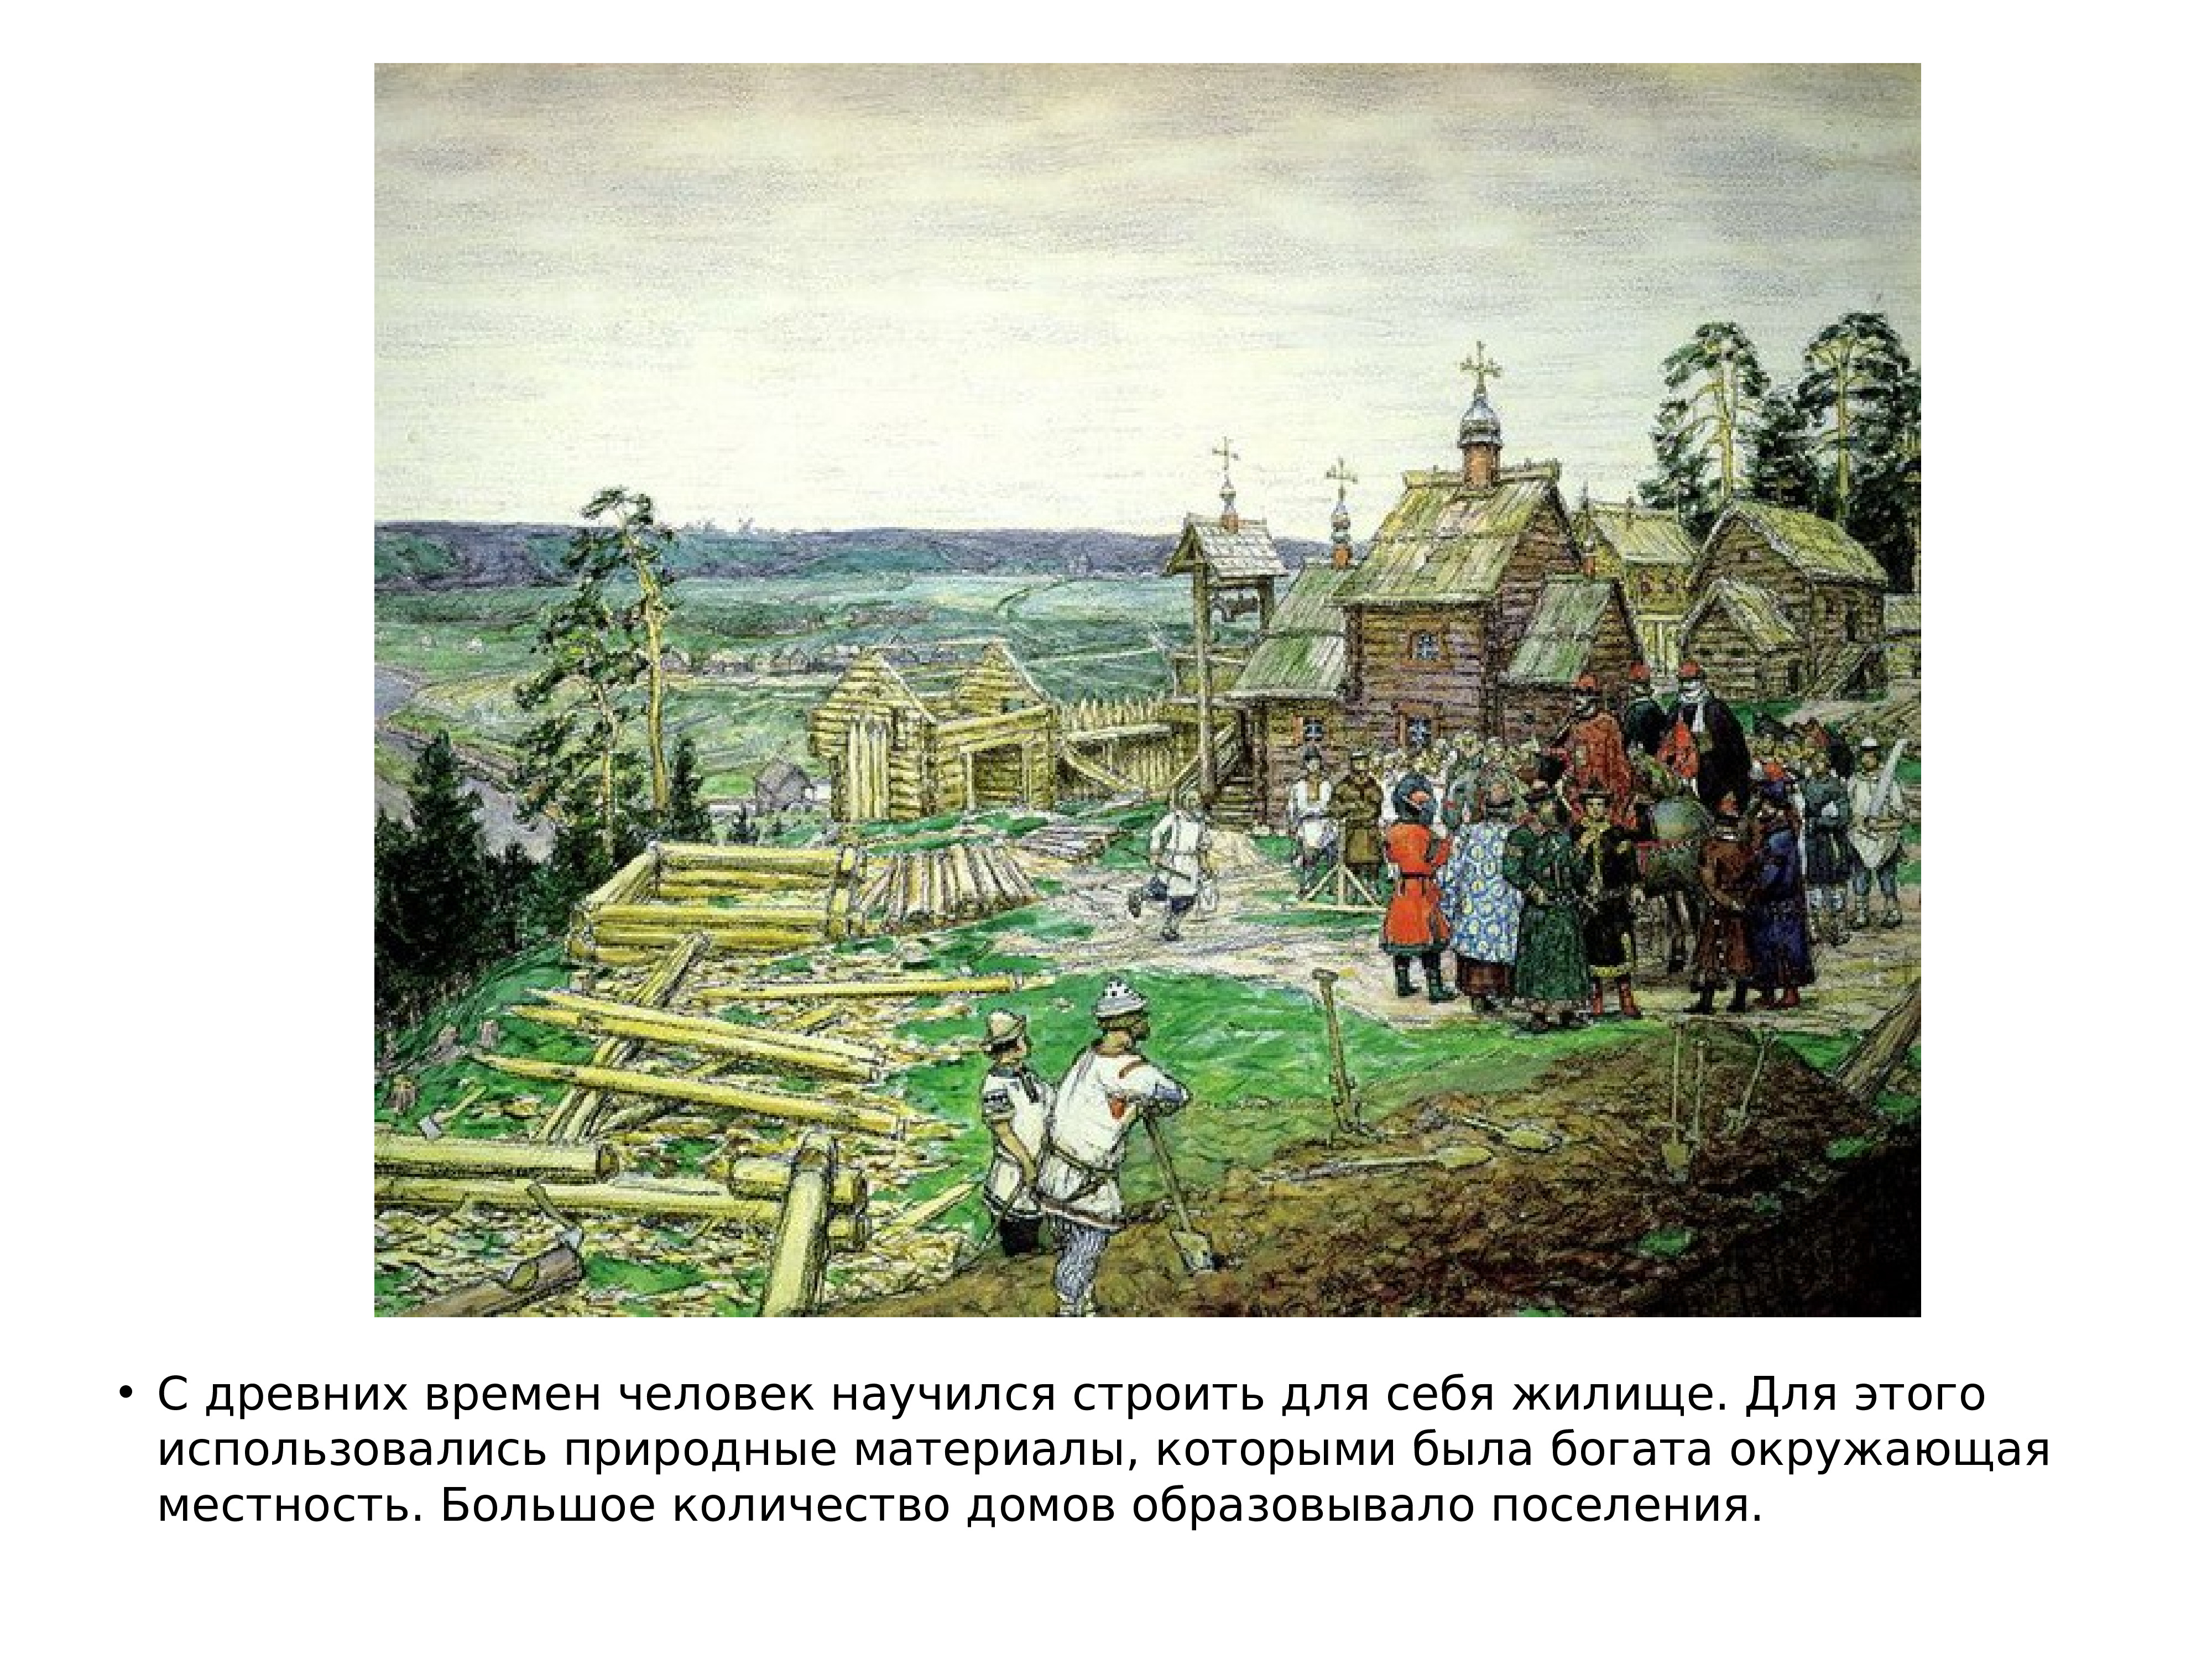 В каком веке упоминание о москве. Основание Москвы 1147 Юрием Долгоруким. А Васнецов Москва 1147.